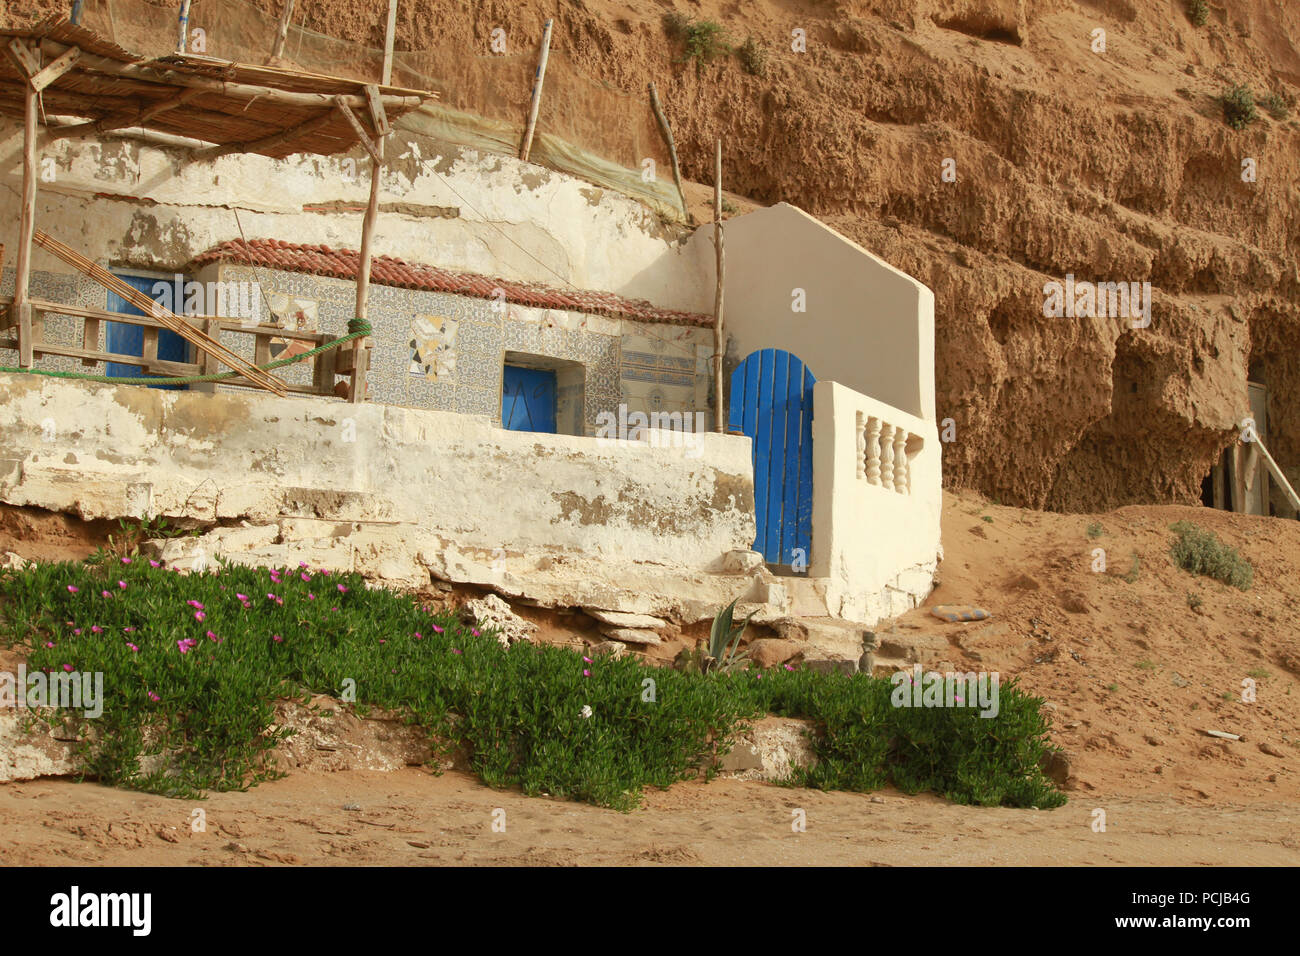 Las ruinas de la abandonada casa de pescadores con un pequeño jardín. Pueblo marroquí en la costa del Océano Atlántico. Foto de stock